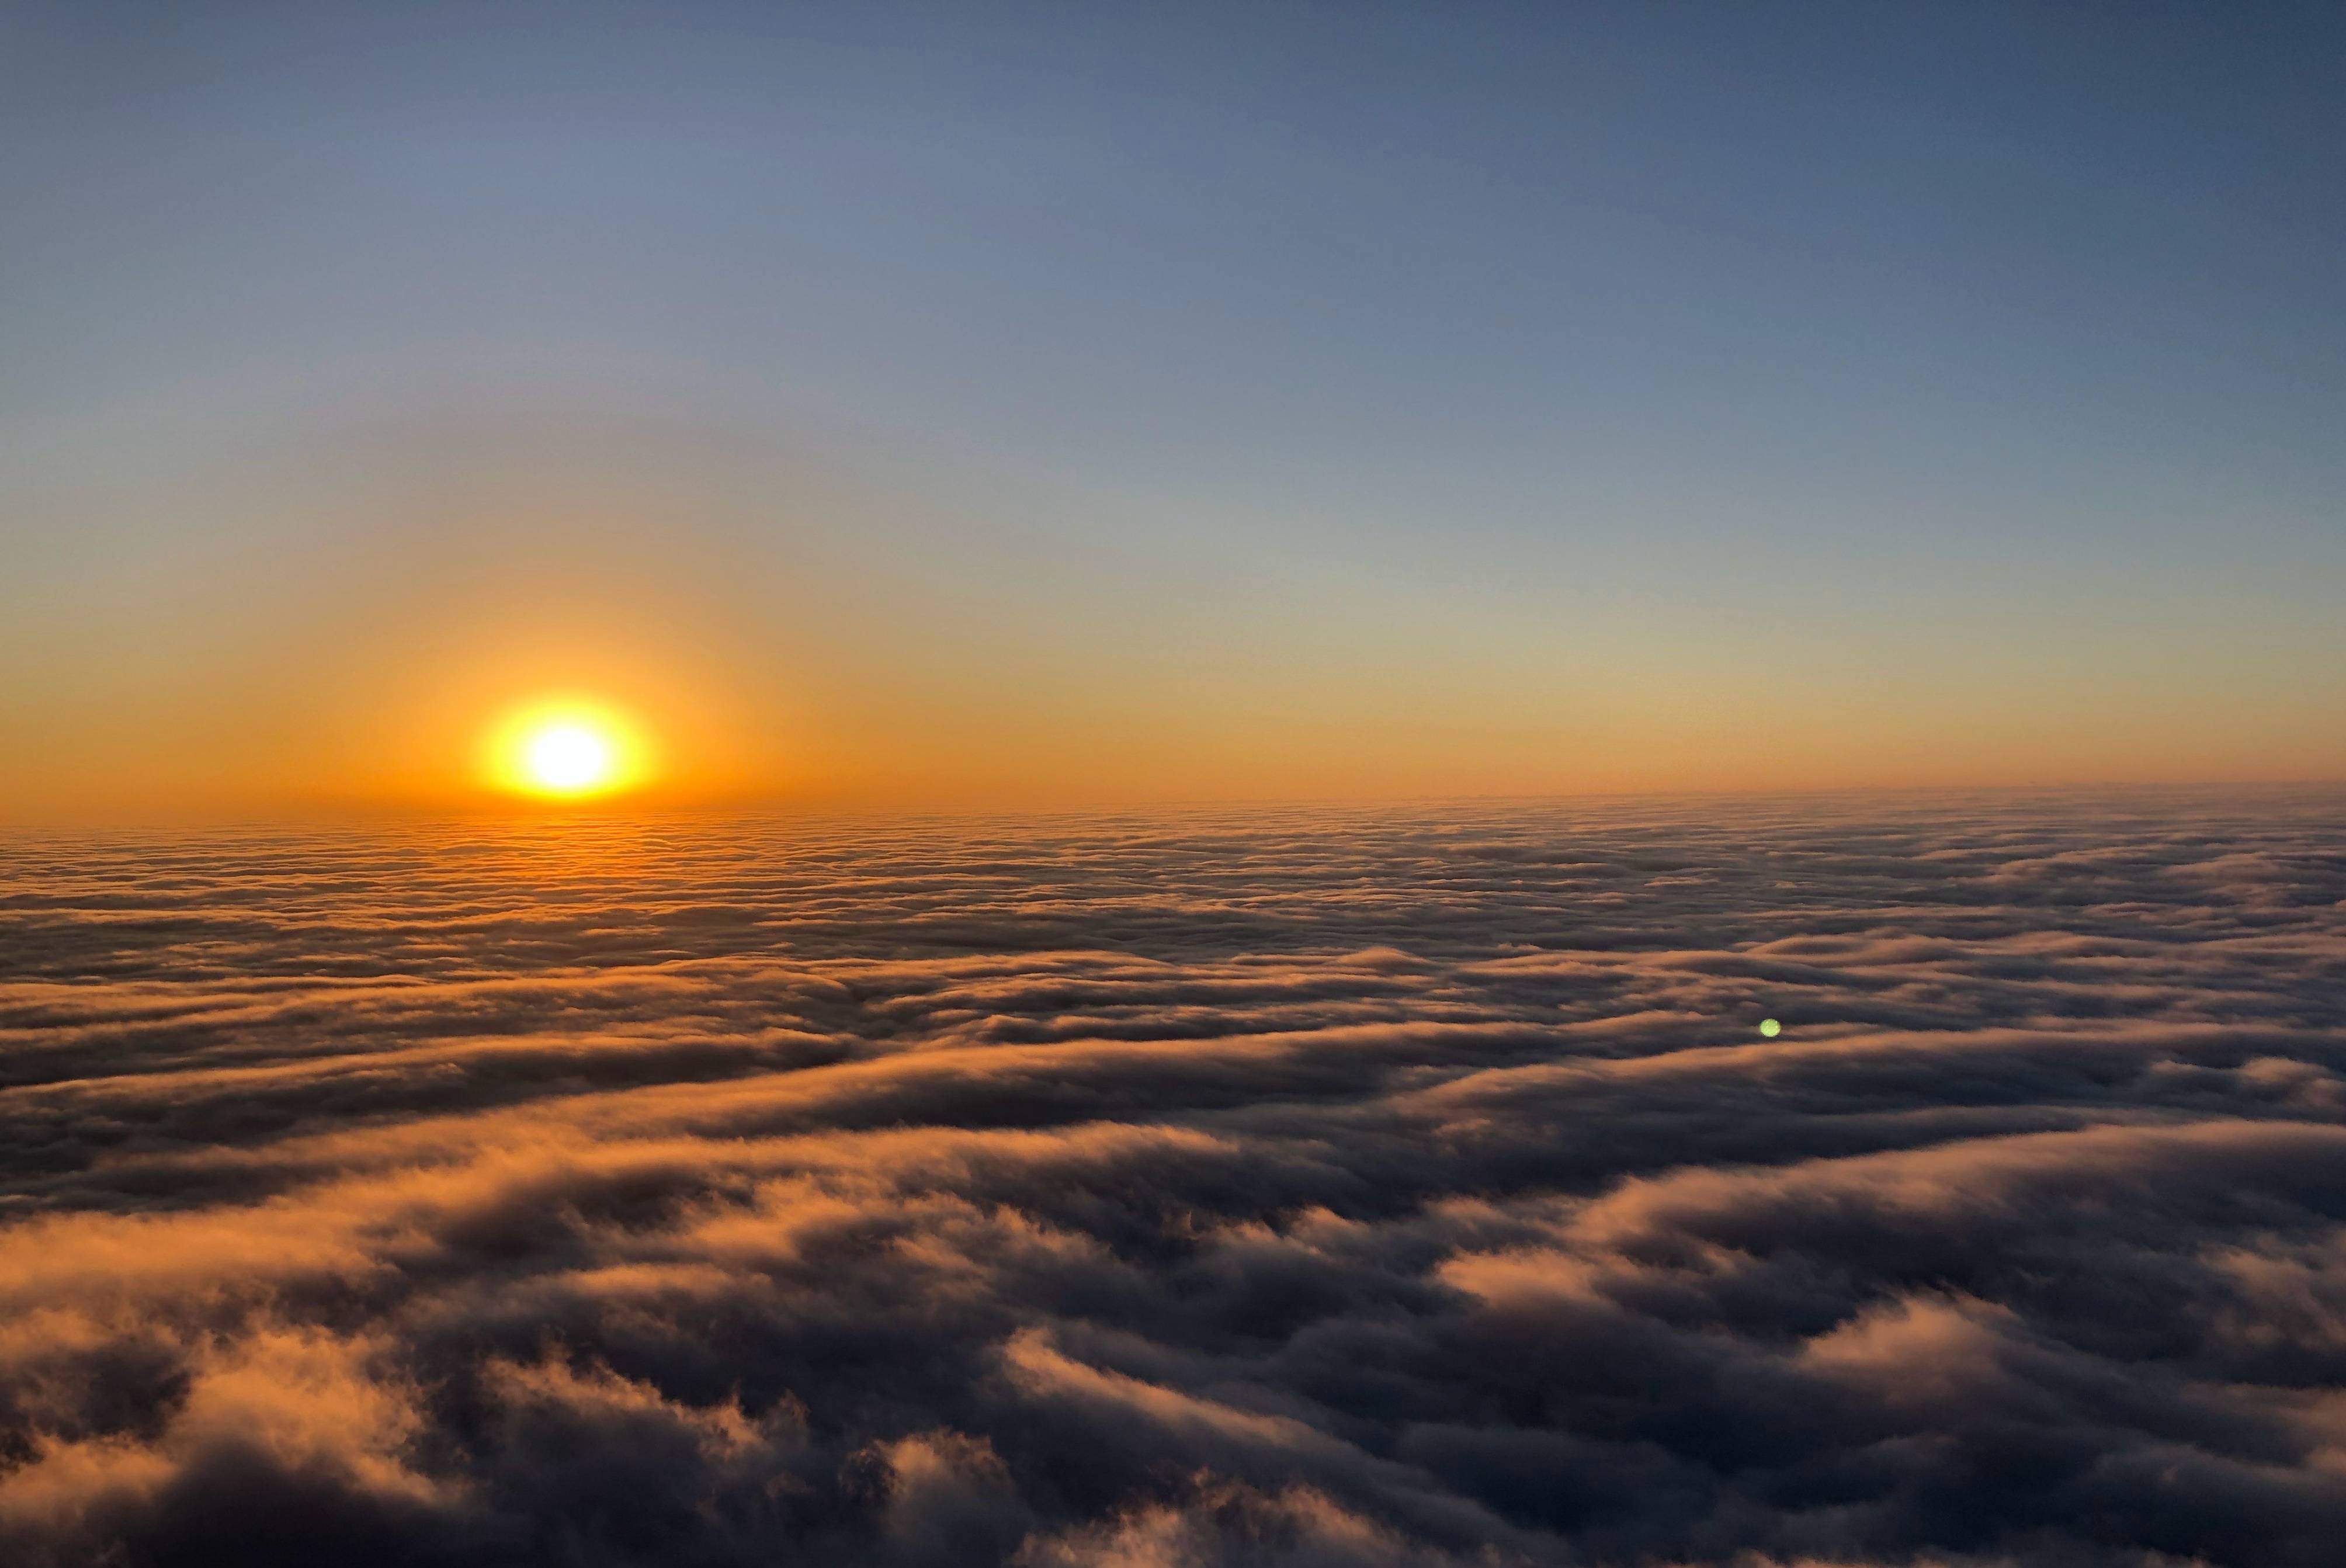 穿越云雾,便是晴天,我觉得看日出还是峨眉山最佳